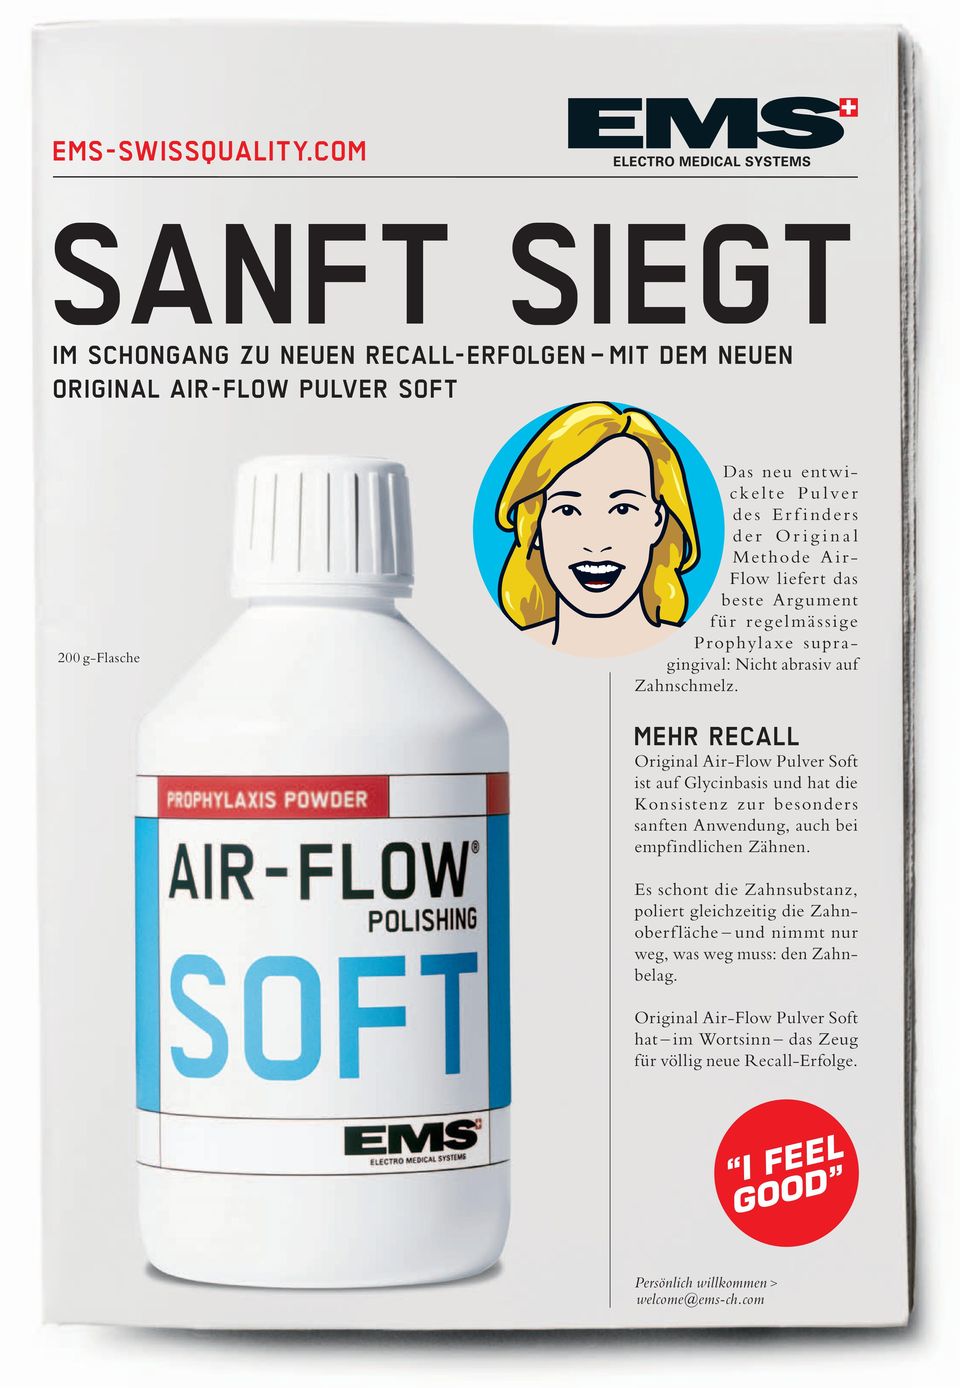 Original Air-Flow Pulver Soft ist auf Glycinbasis und hat die Konsistenz zur besonders sanften Anwendung, auch bei empfindlichen Zähnen.